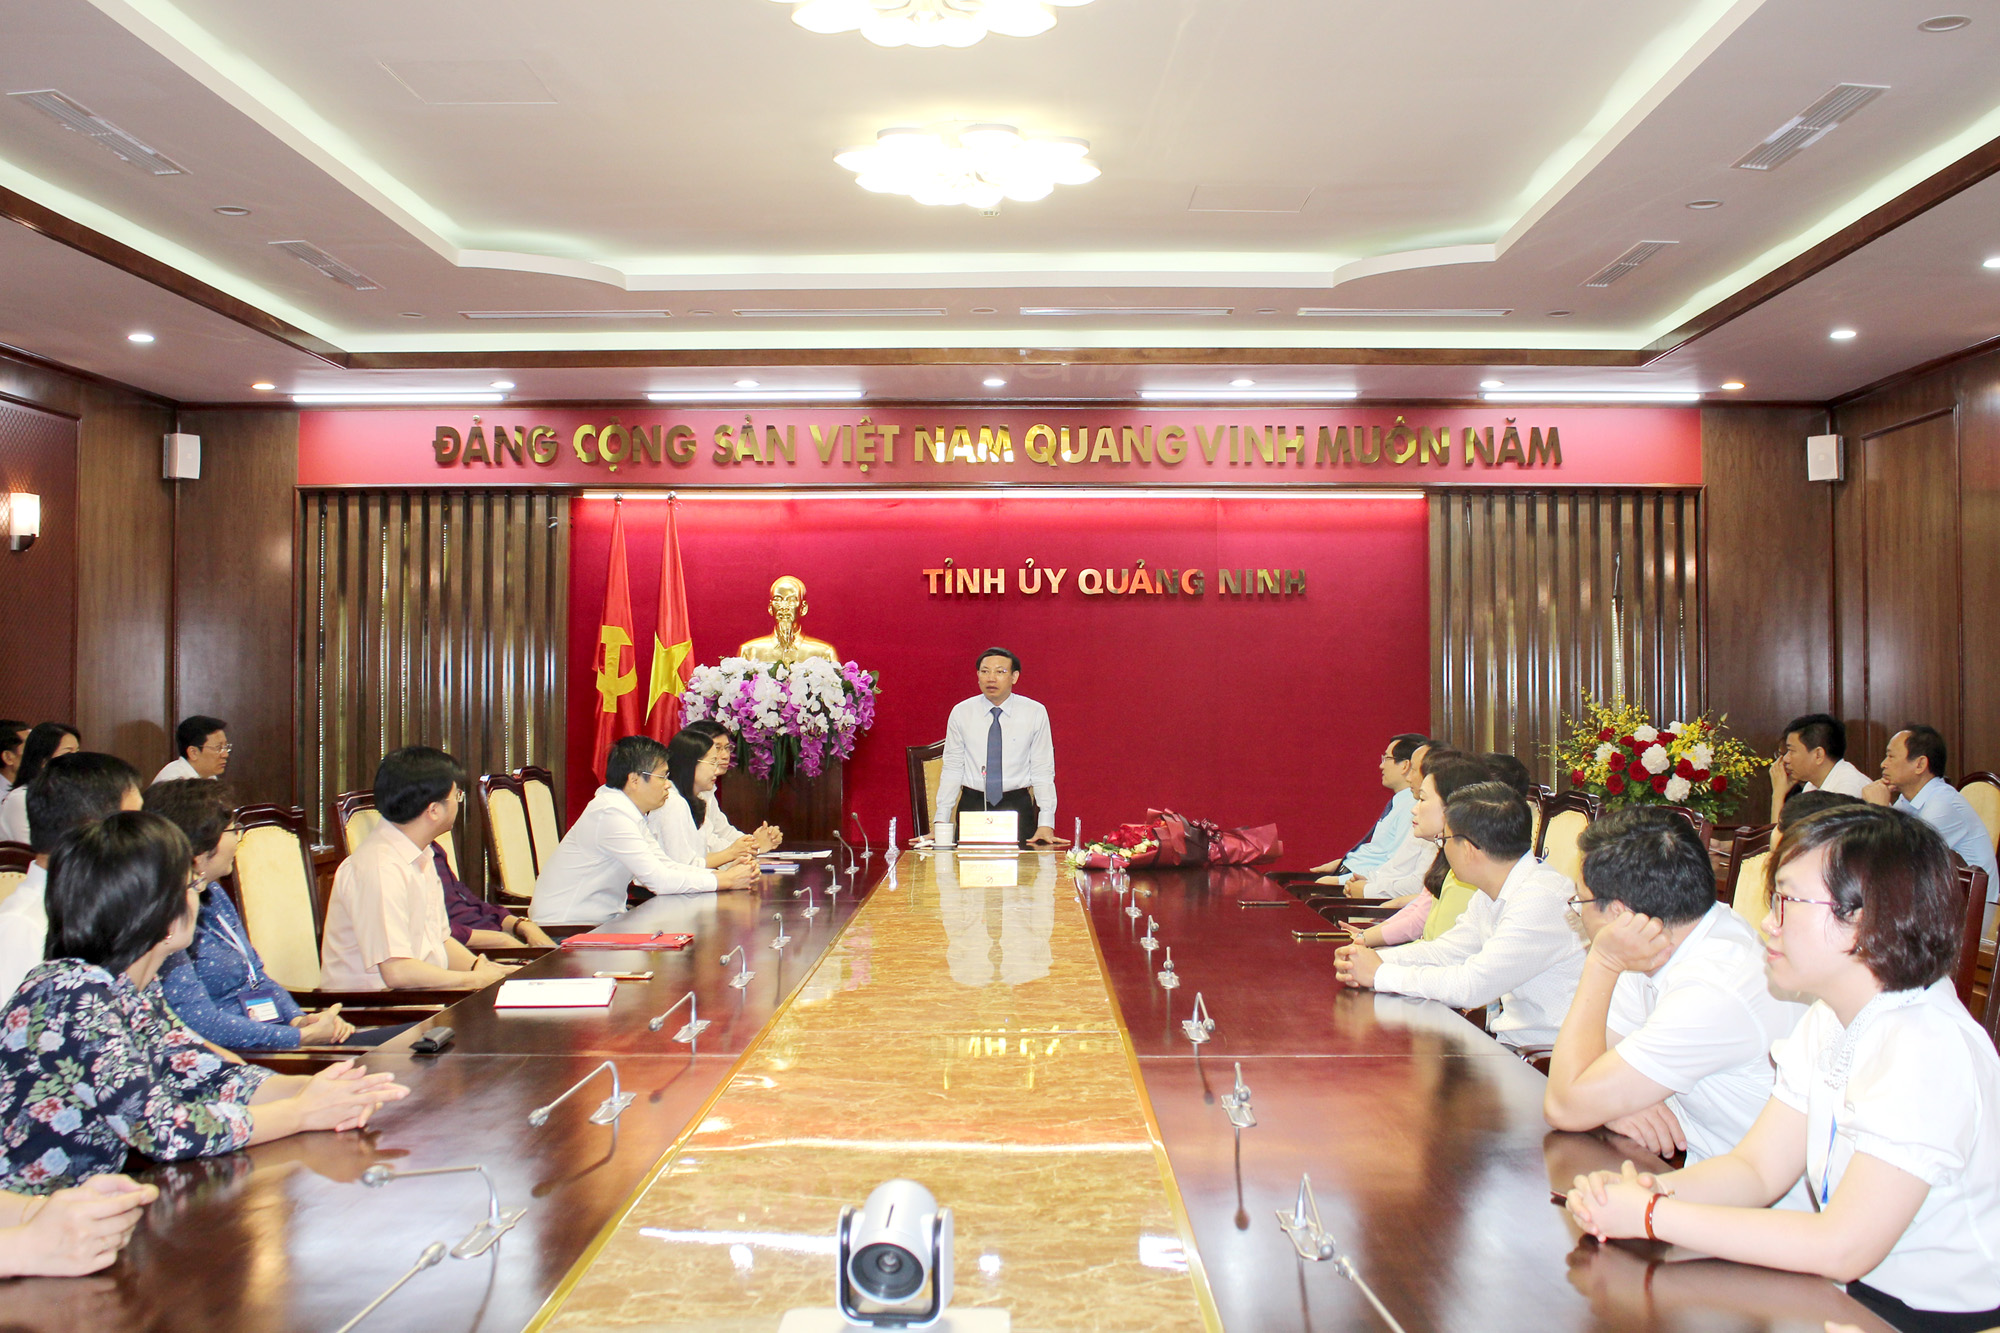 Đồng chí Nguyễn Xuân Ký, Bí thư Tỉnh ủy, Chủ tịch HĐND tỉnh, phát biểu giao nhiệm vụ.